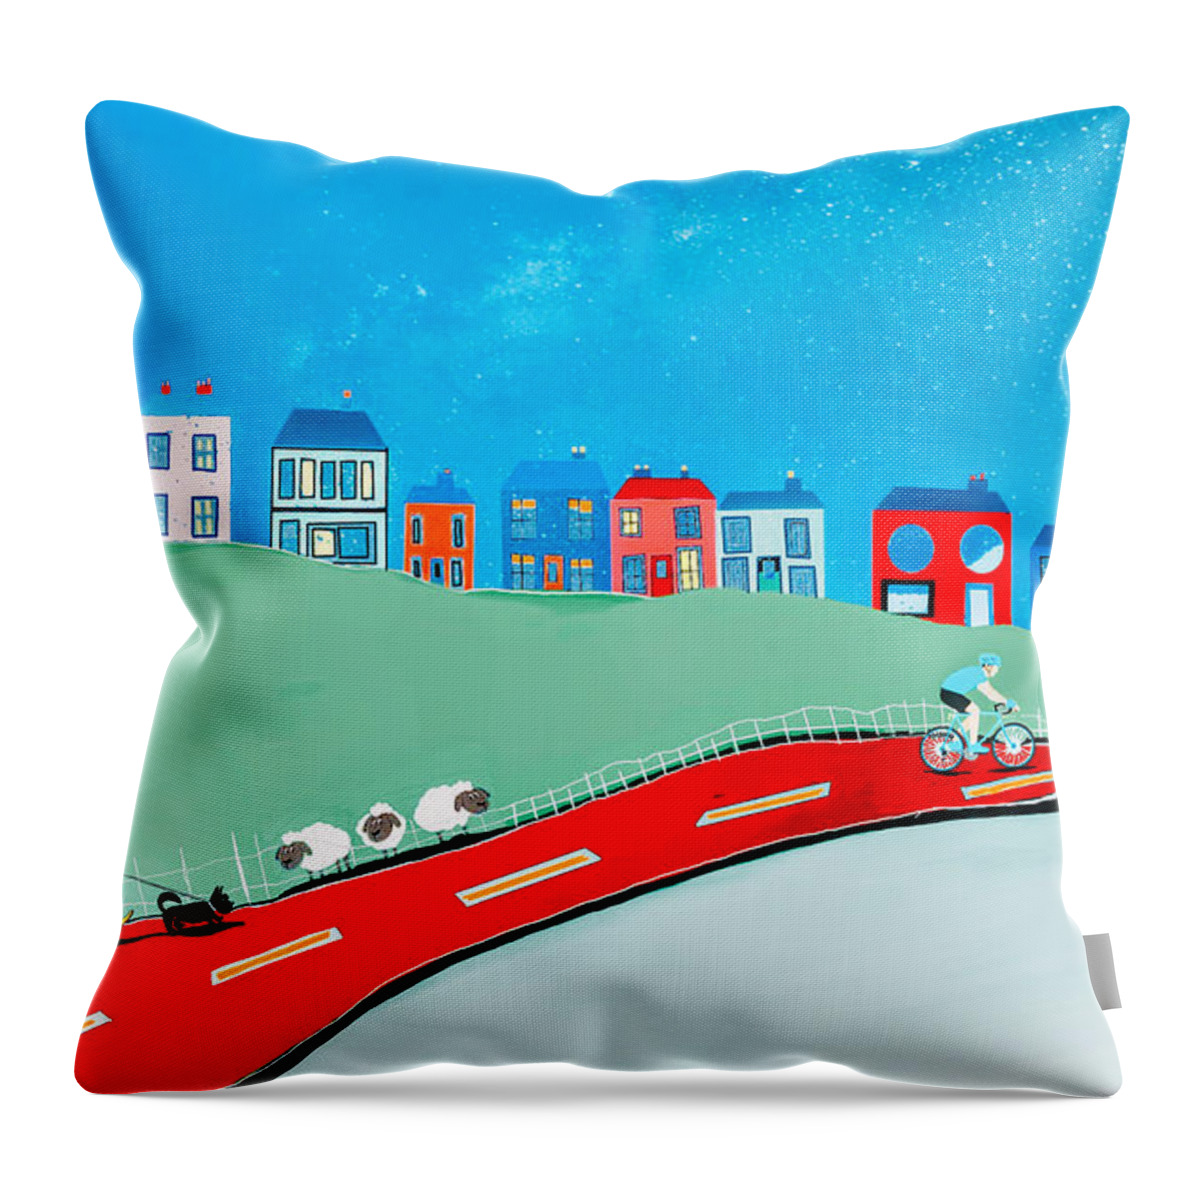 Hillside Village Throw Pillow featuring the digital art Robs Hill by John Mckenzie